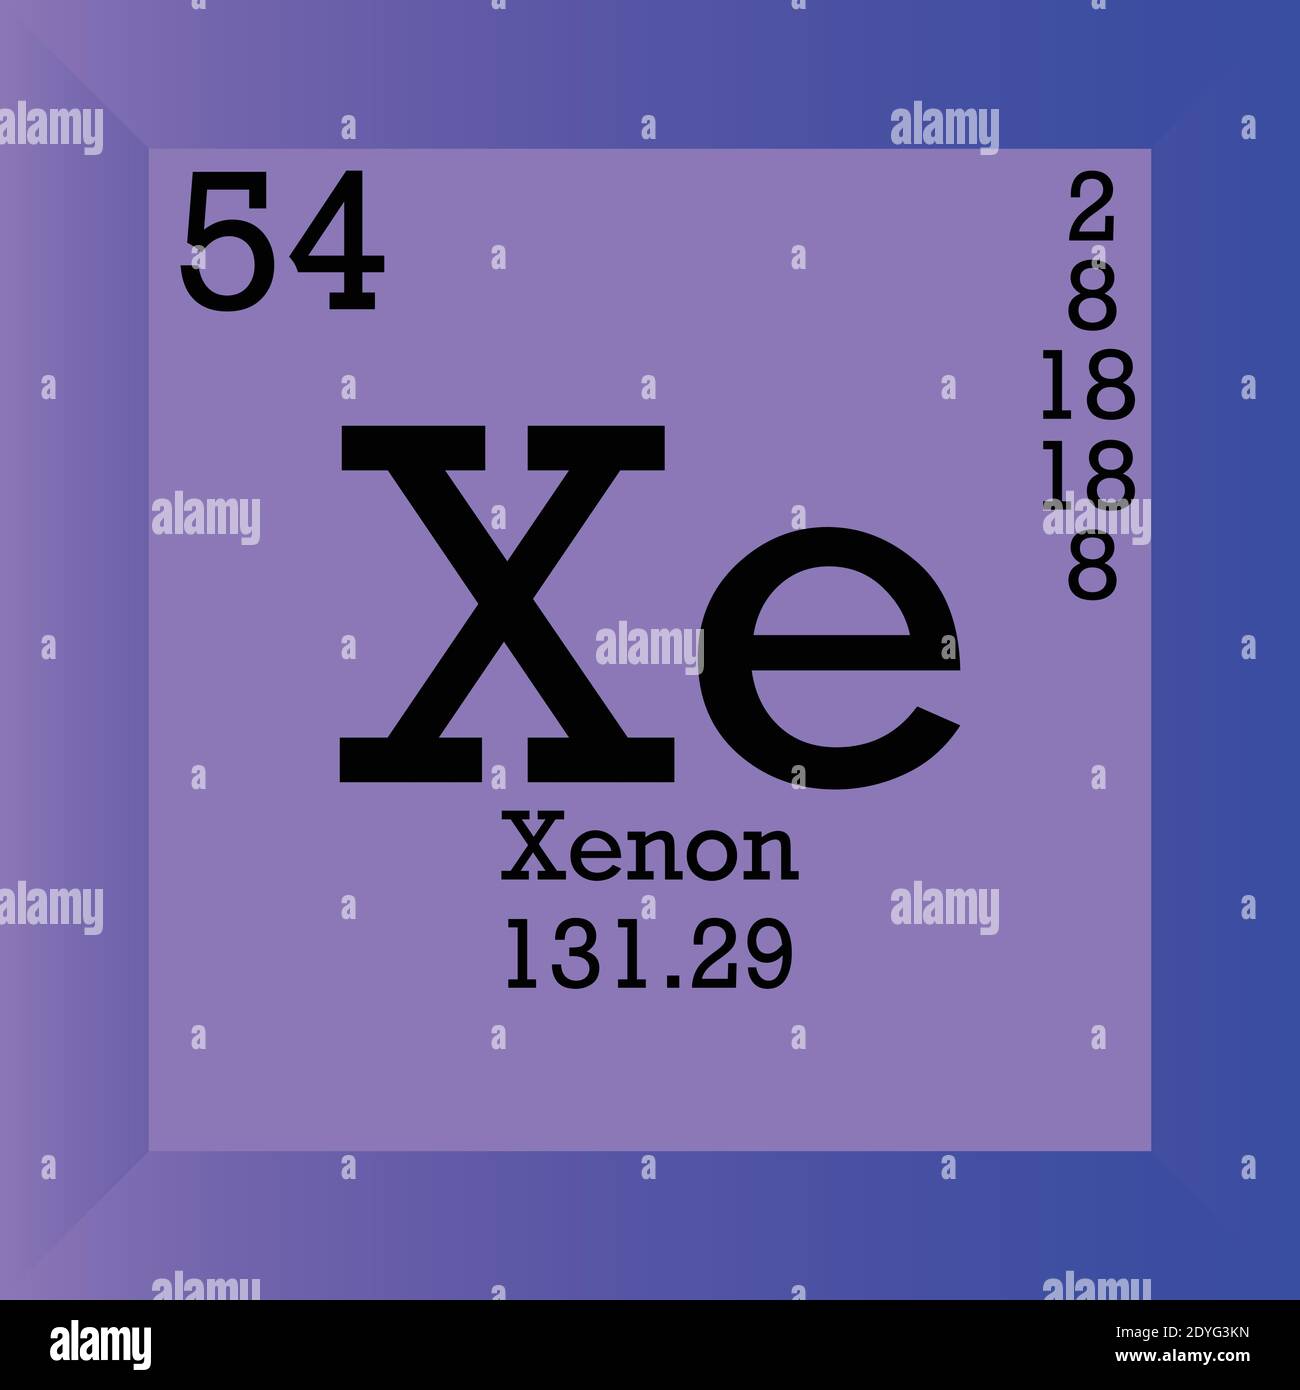 Ксенон химический элемент. Xe ксенон элемент. Ксенон xe. Ксенон химический элемент история возникновения.